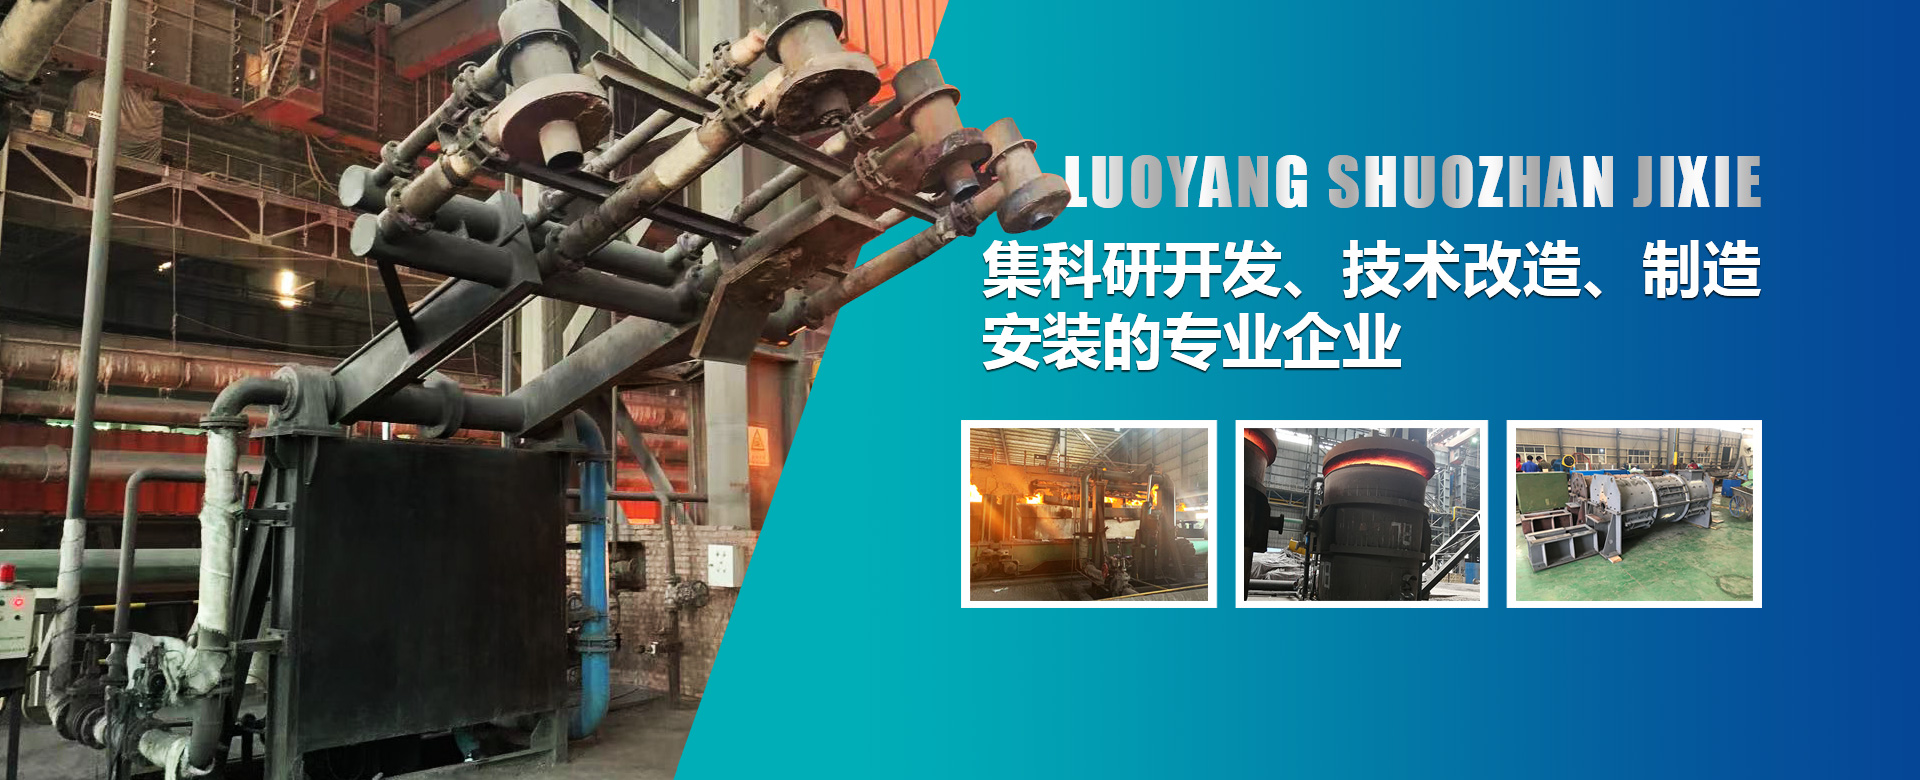 烘烤器是鋼鐵廠生產的必須設備，也是鋼鐵生產過程中能耗較大的設備